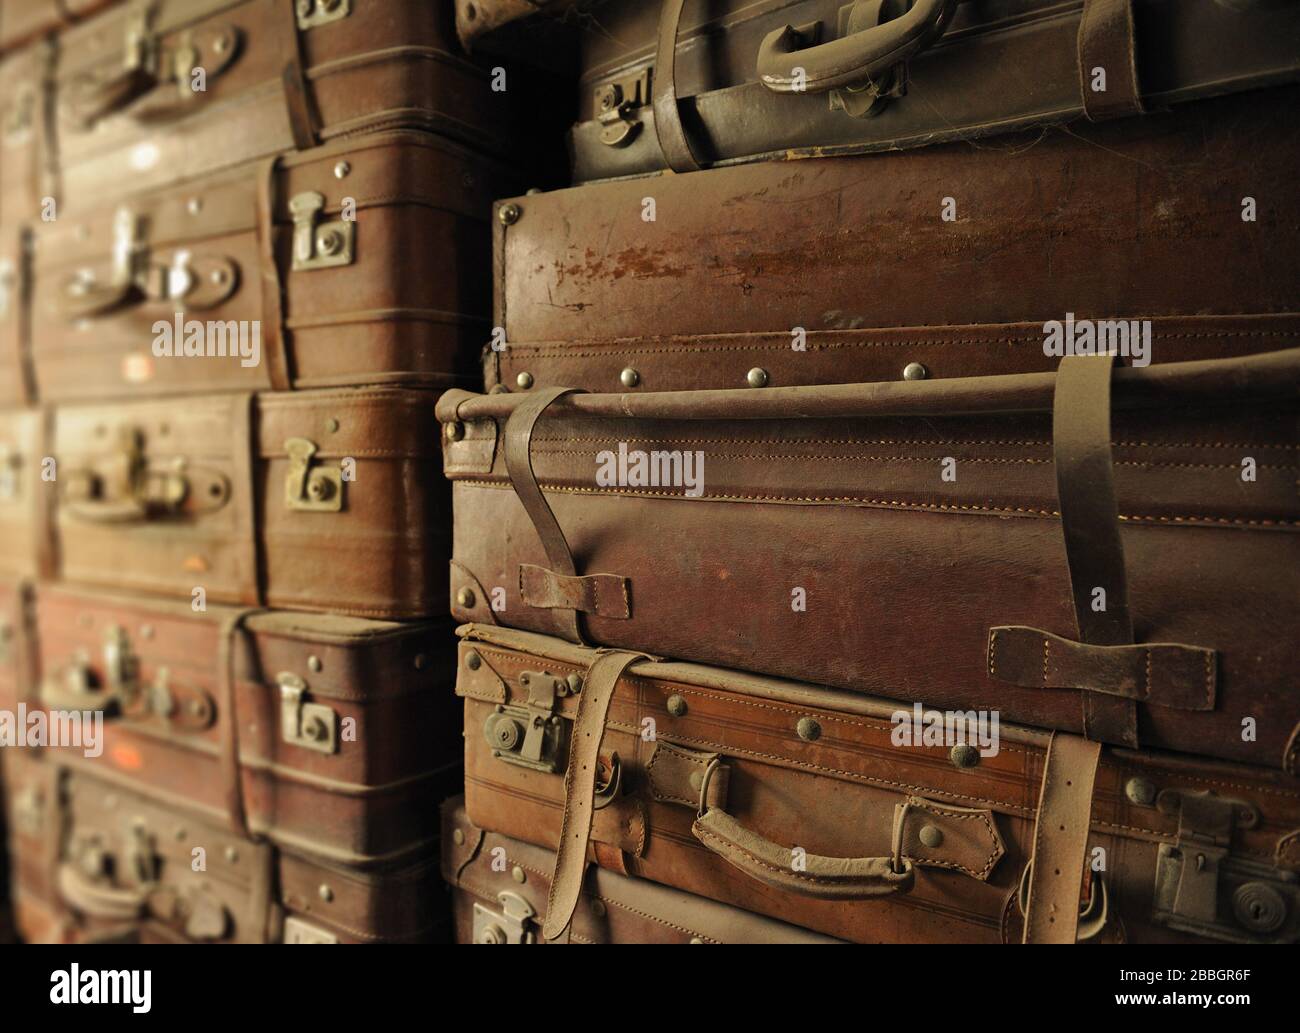 Disposition de vieilles valises en cuir, recouvertes de poussière Banque D'Images